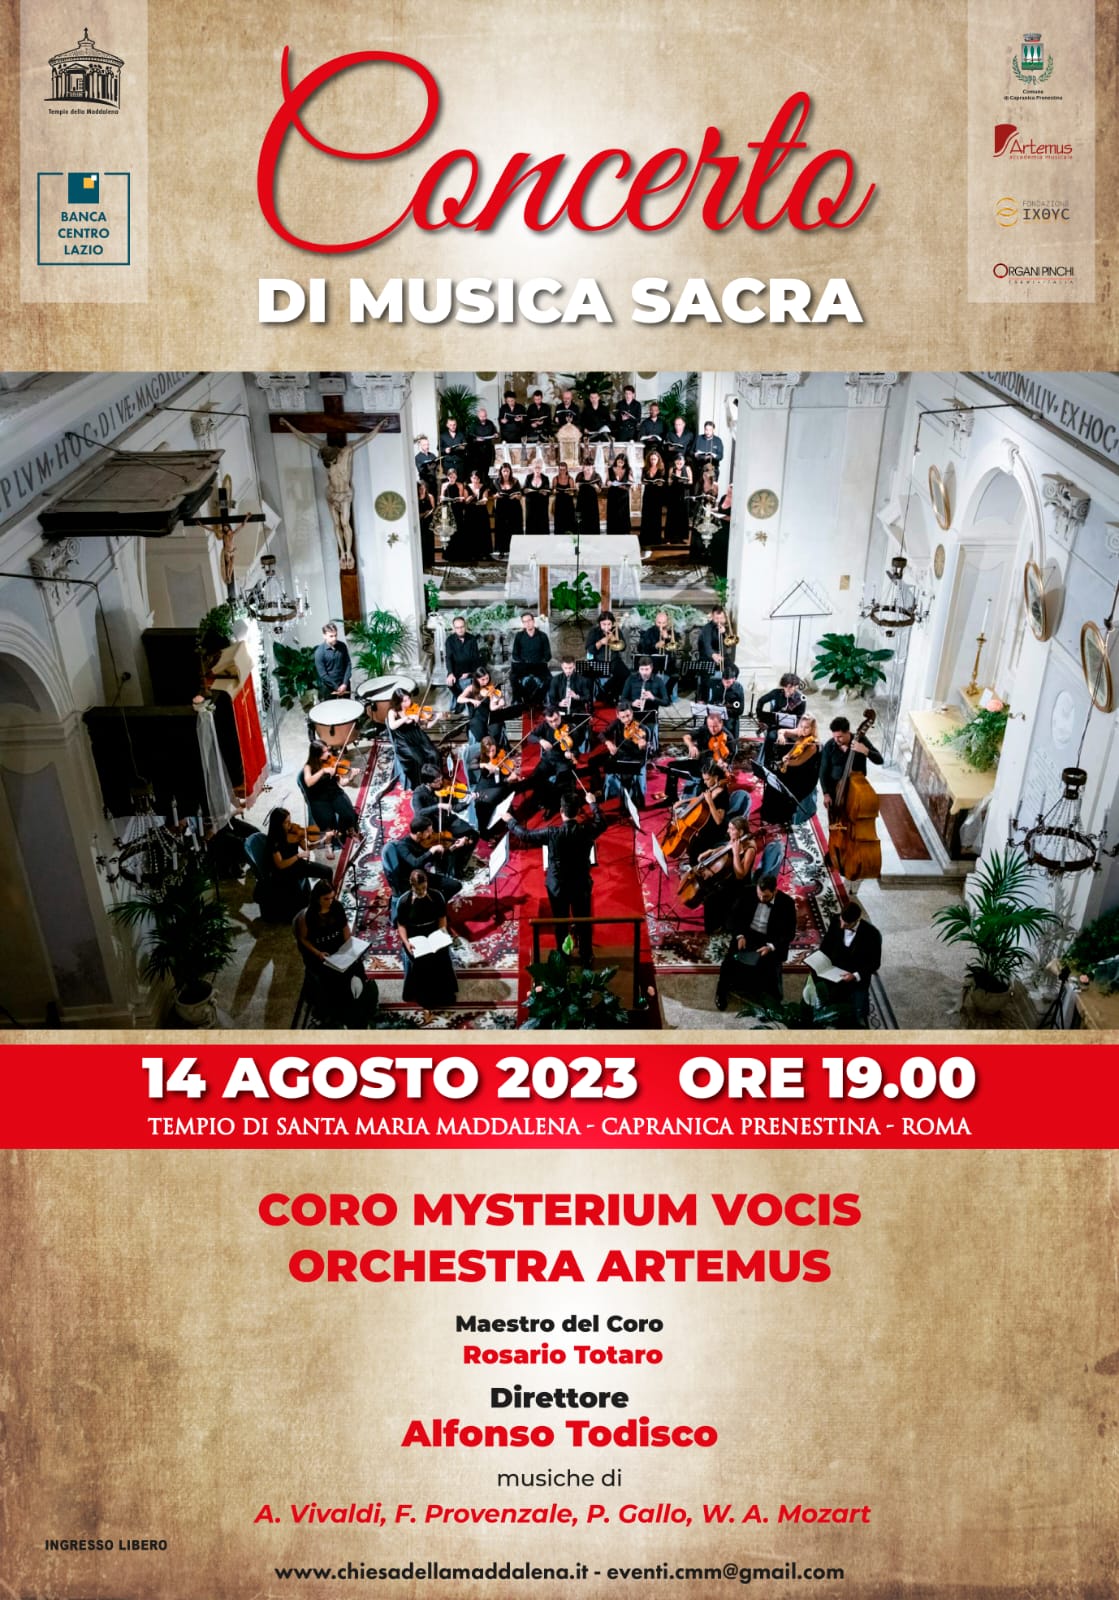 https://www.agenziaeventi.org/immagini_news/3727/capranica-prenestina-il-14-agosto-concerto-di-musica-sacra-3727.jpg